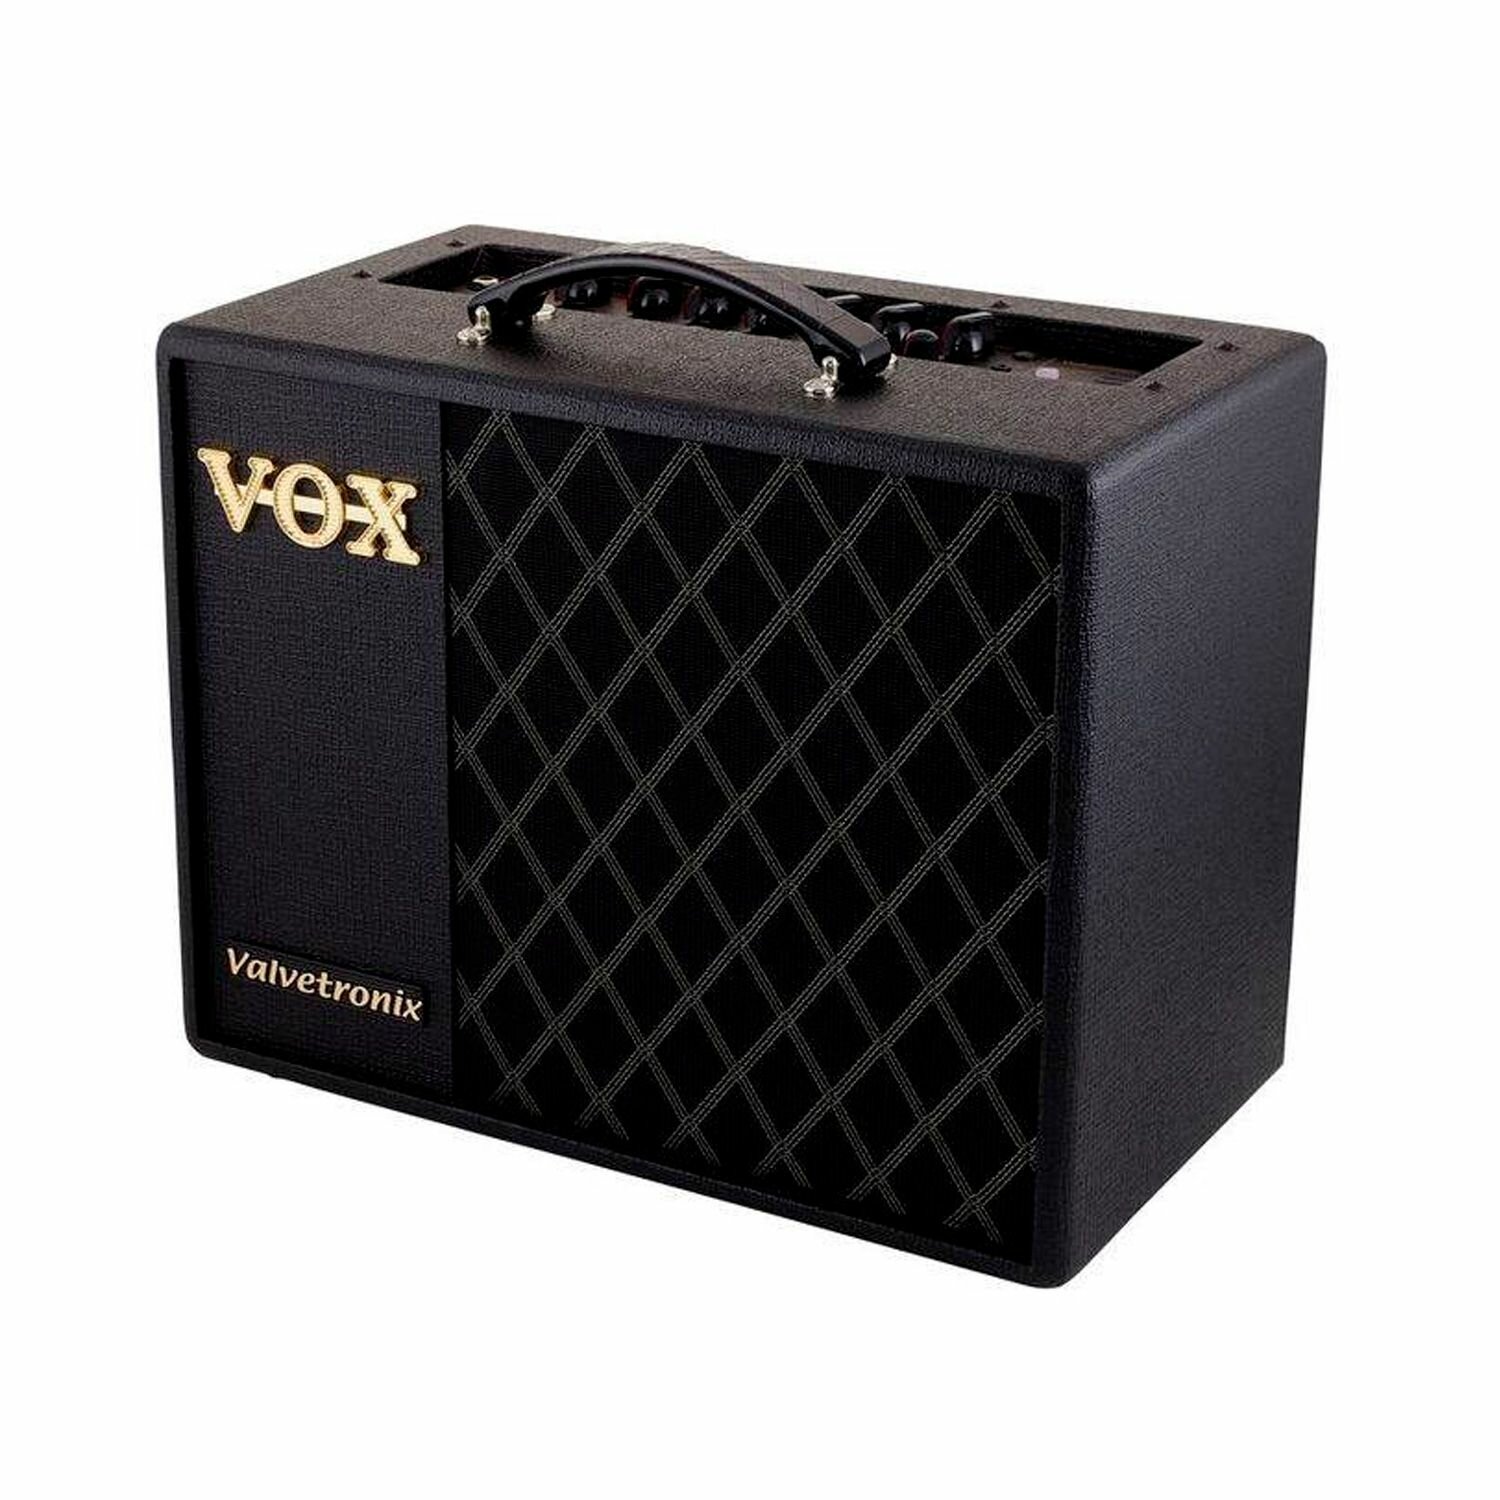 Комбоусилитель для электрогитары VOX VT20X